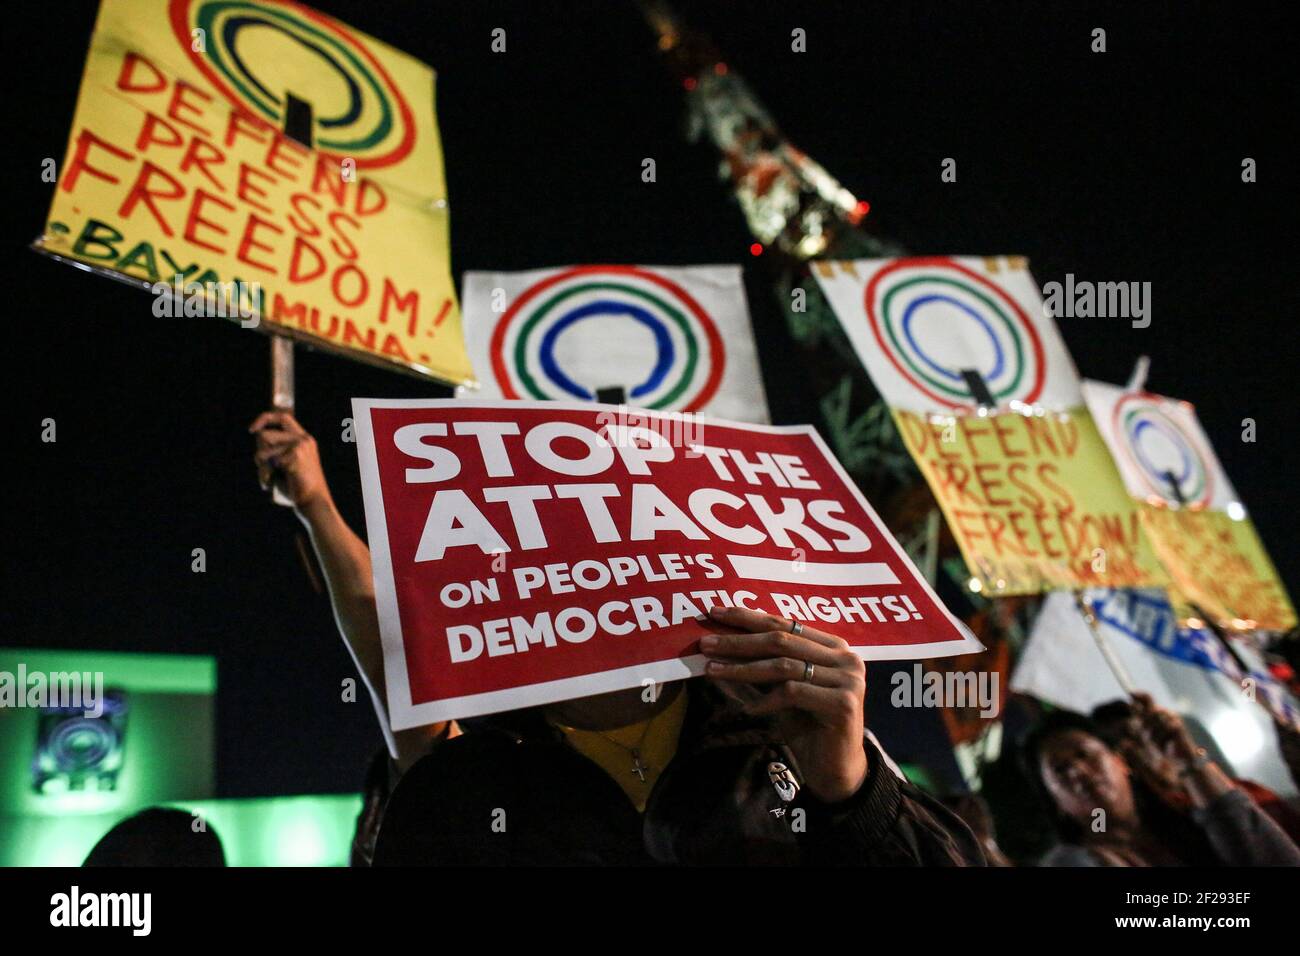 Les défenseurs de la liberté de la presse crient des slogans lors d'une manifestation devant le siège de l'ABS-CBN à Quezon City, dans la région métropolitaine de Manille, aux Philippines. Banque D'Images